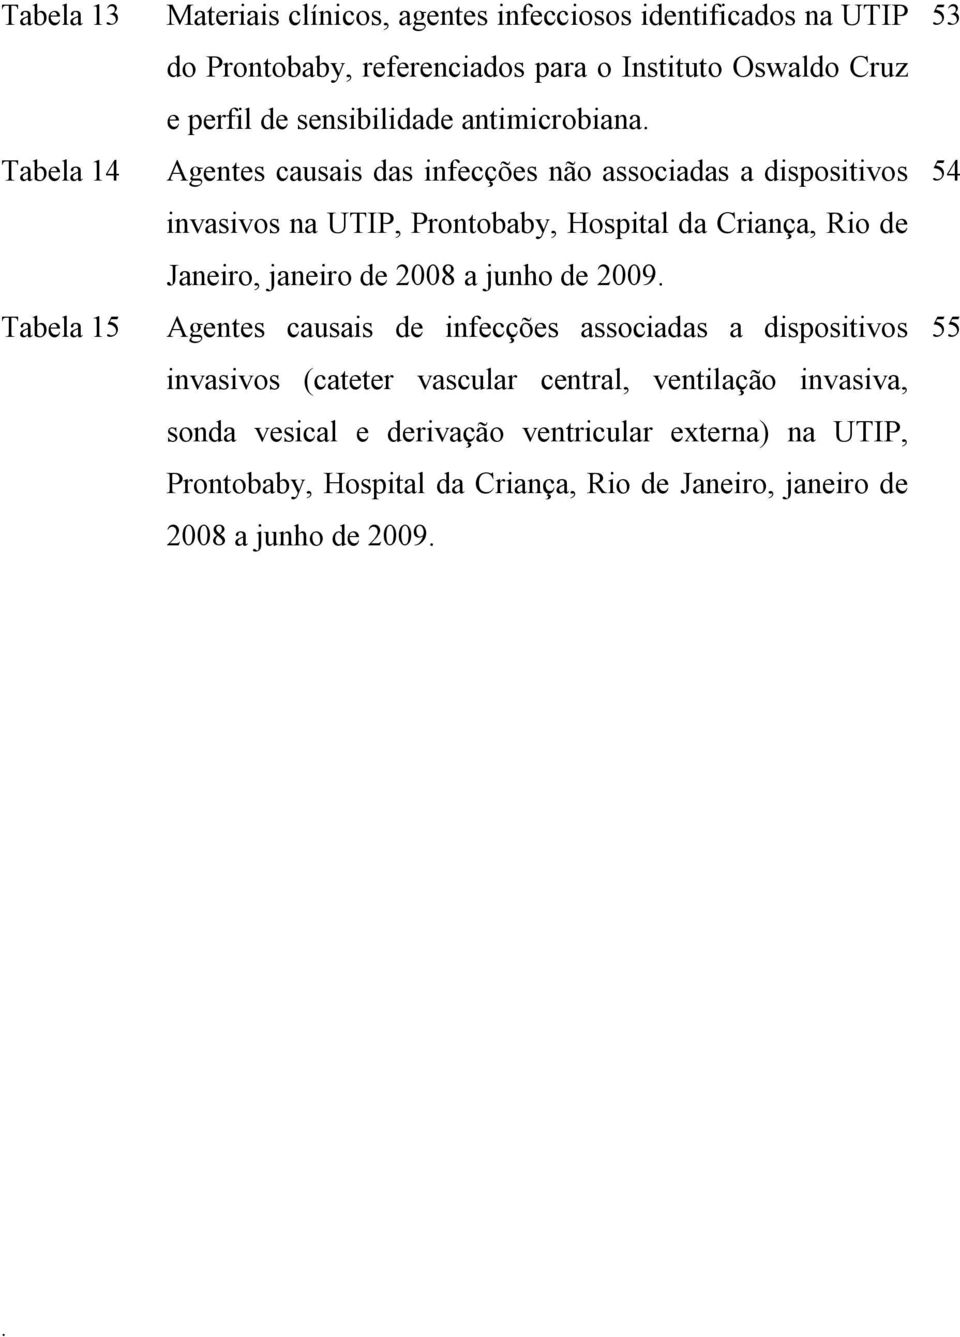 Rio de Janeiro, janeiro de 2008 a junho de 2009 Agentes causais de infecções associadas a dispositivos invasivos (cateter vascular central, ventilação